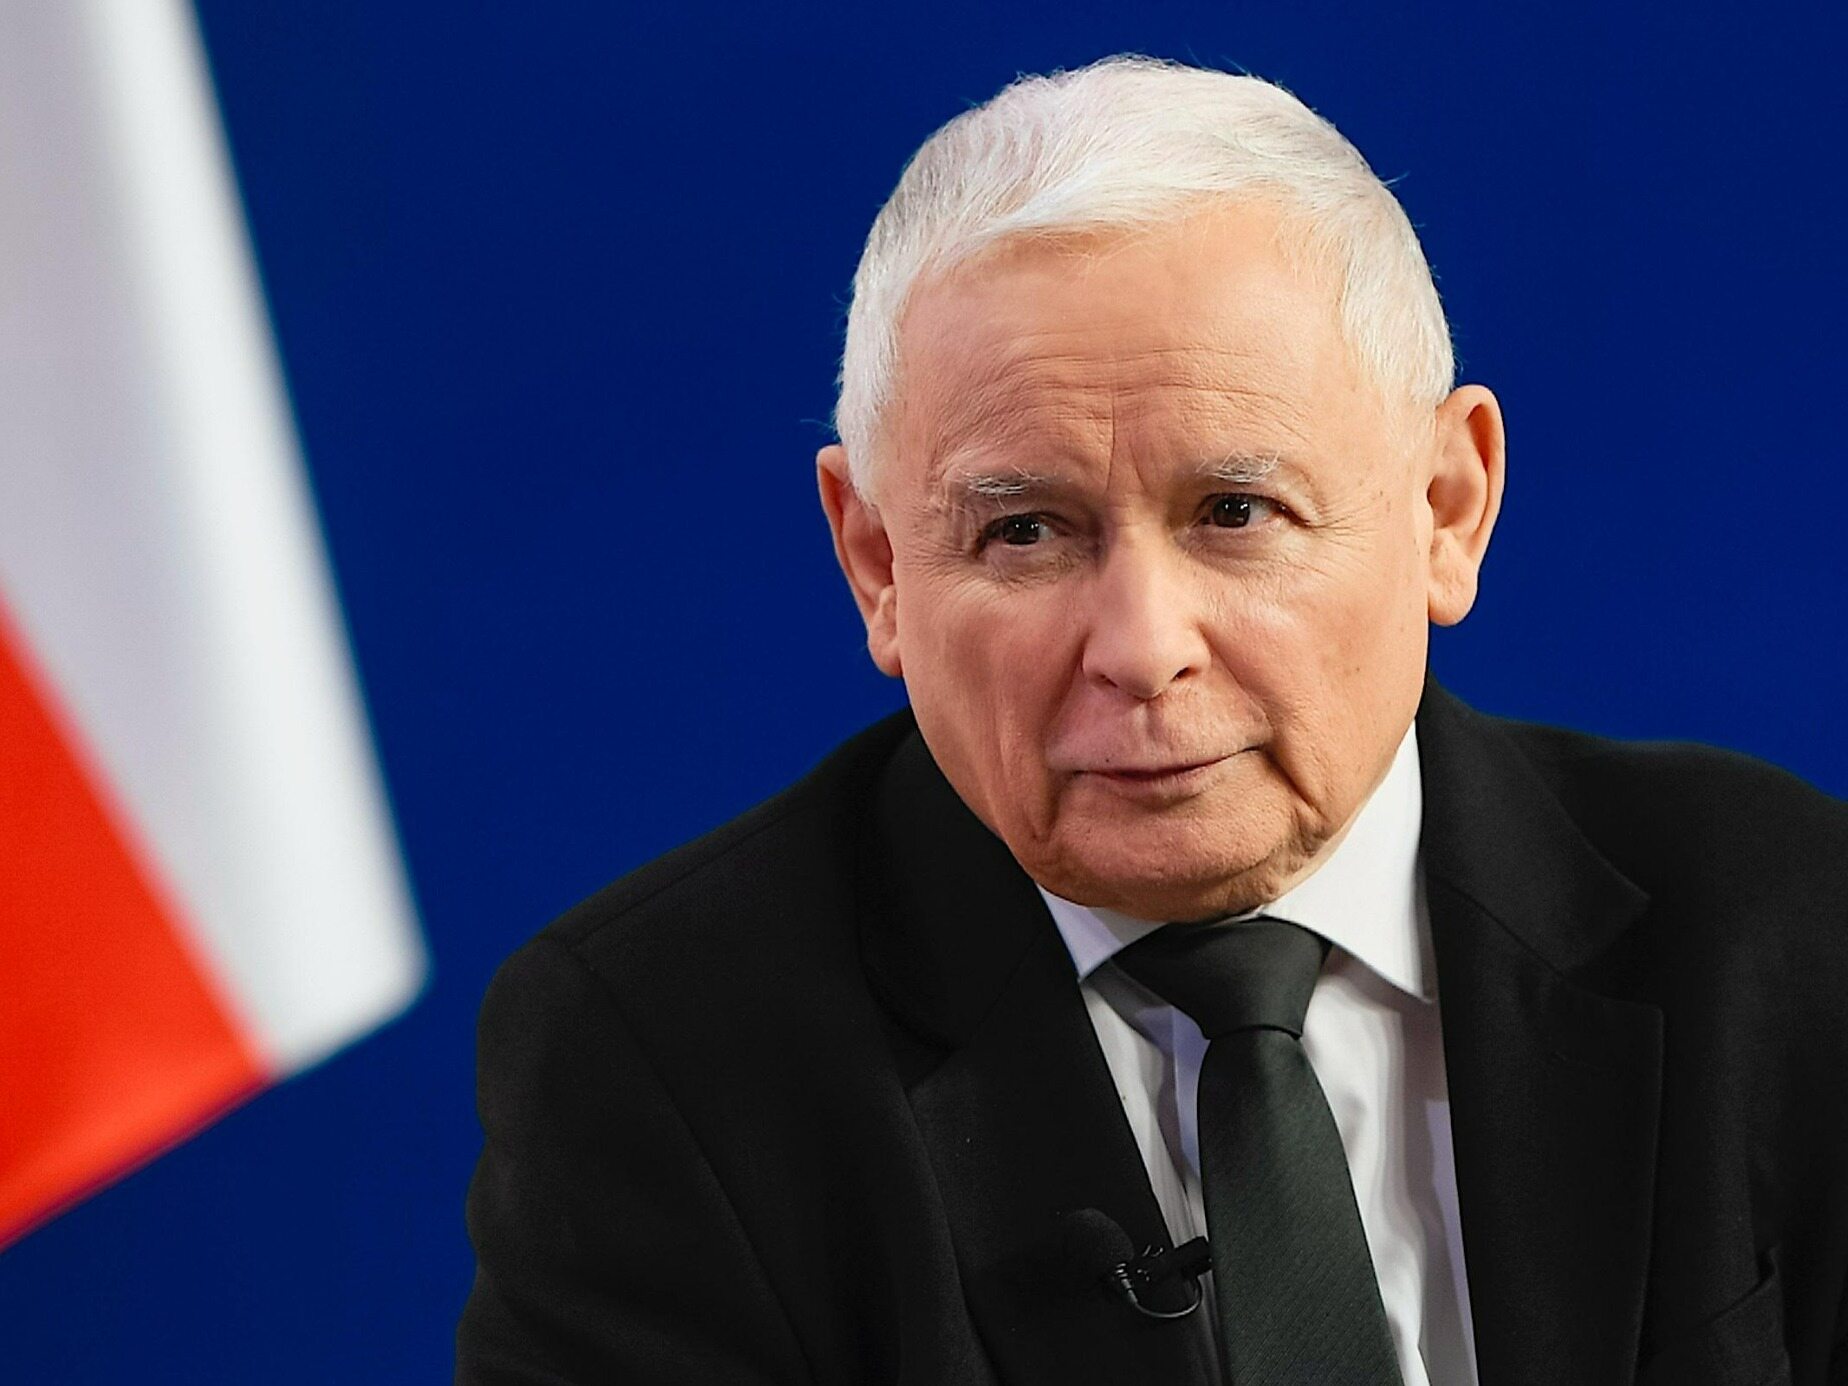 kaczyński: ta konstytucja zawiodła. trzeba całkowicie zreformować system